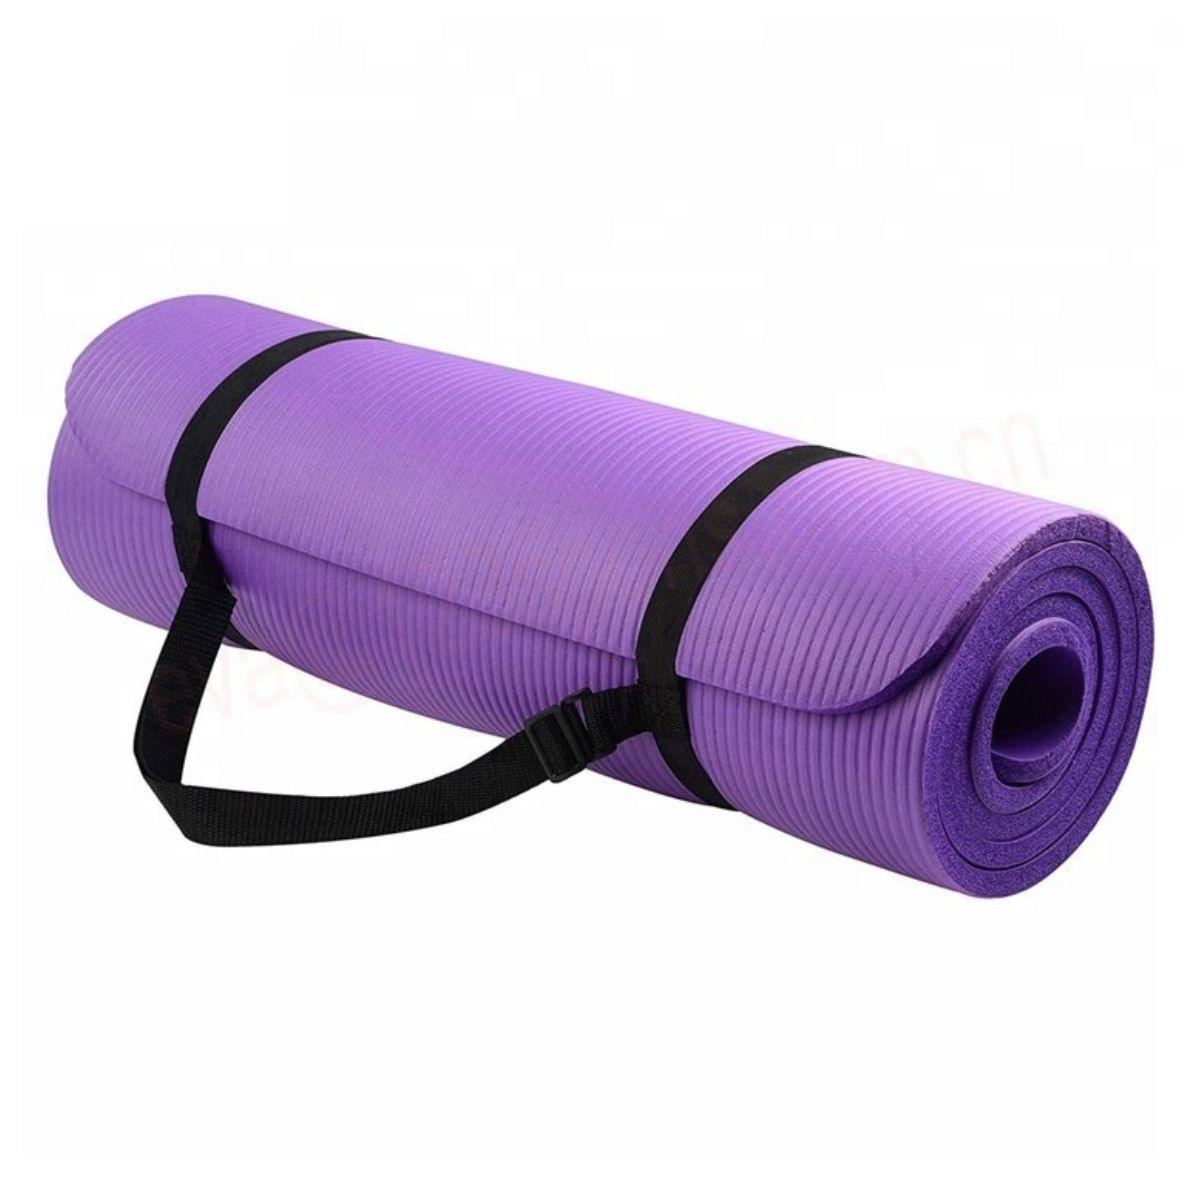 SOKANO Premium Grade 15mm Non-Slip NBR Yoga Mat [Delivery Included]